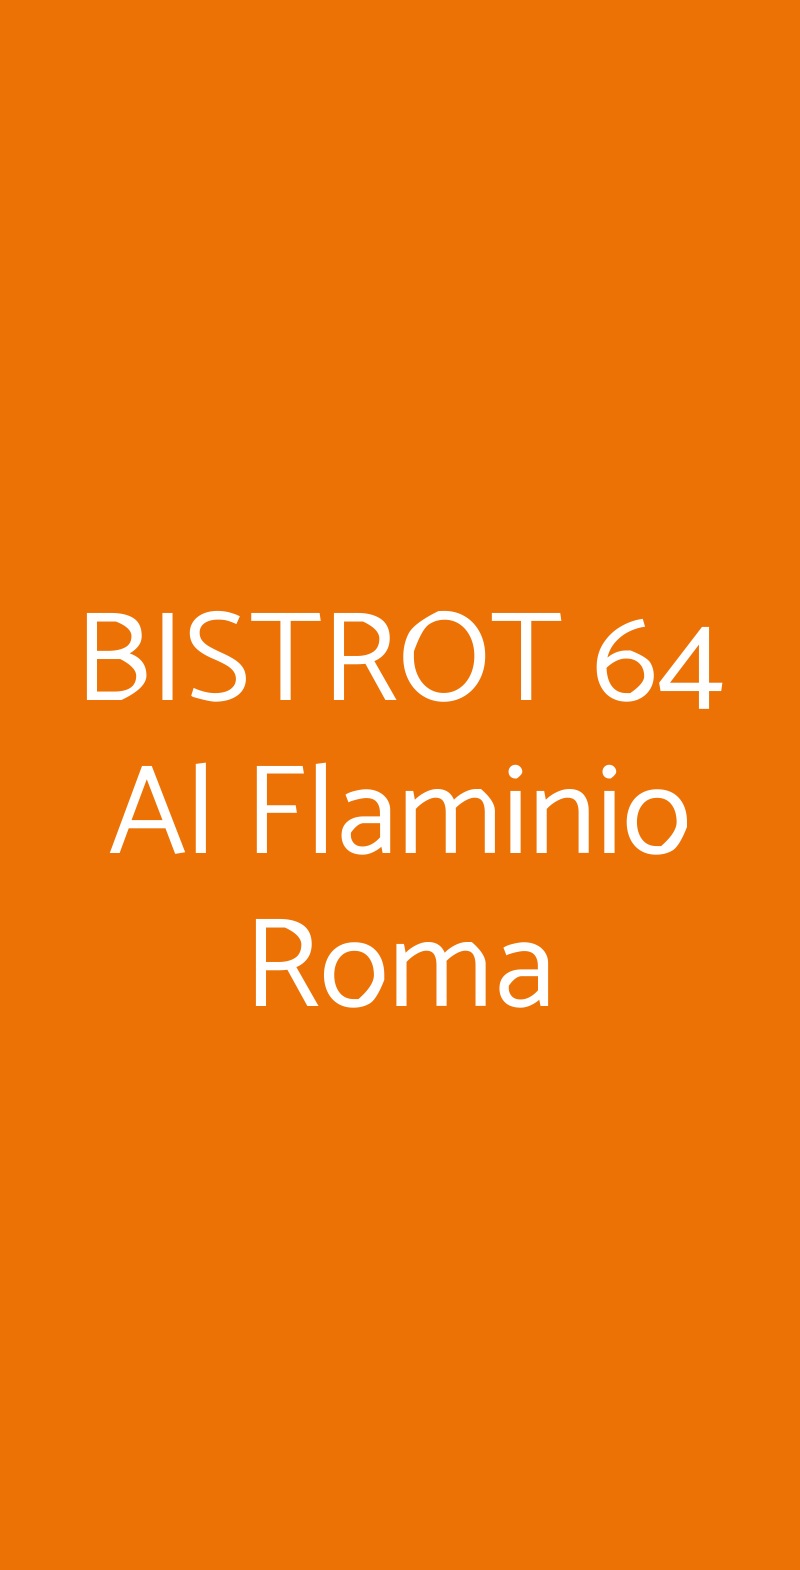 BISTROT 64 Al Flaminio Roma Roma menù 1 pagina